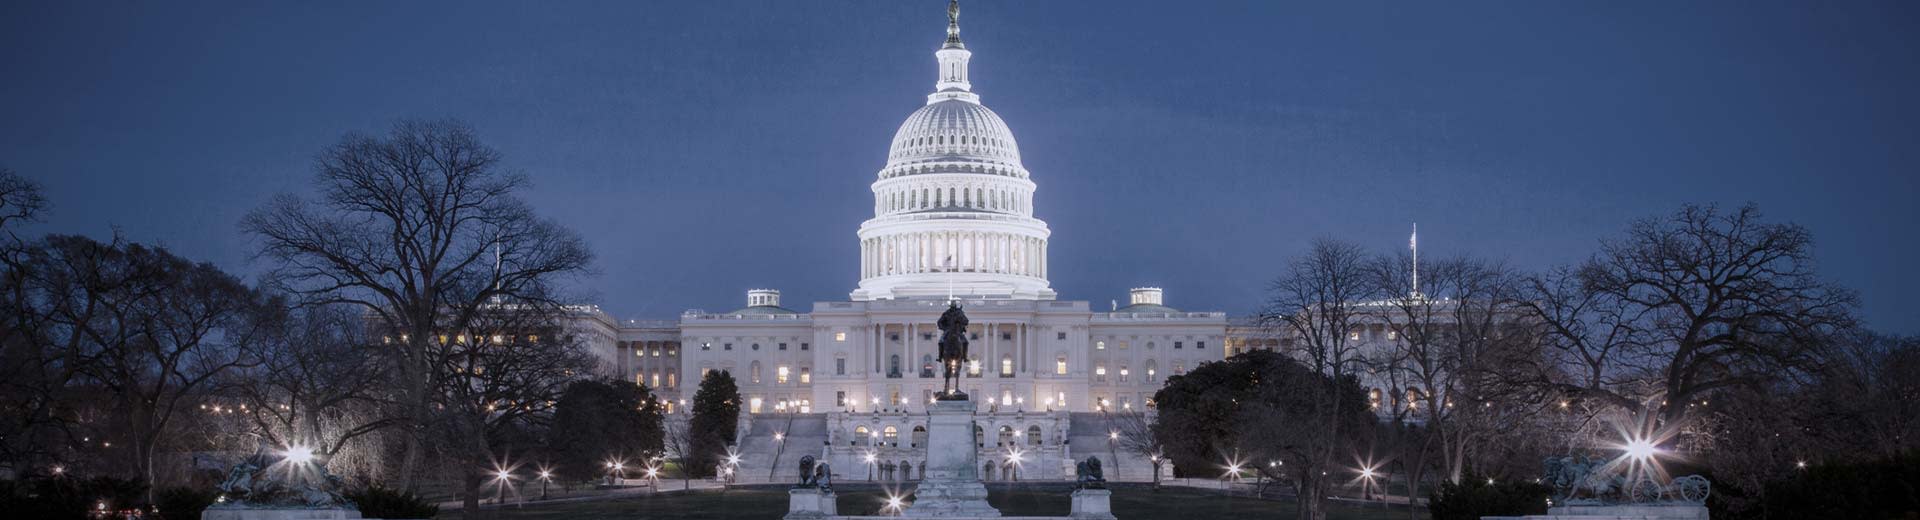 海军蓝的天空映衬着华盛顿特区最著名的地标之一--国会大厦在黑暗中熠熠生辉。